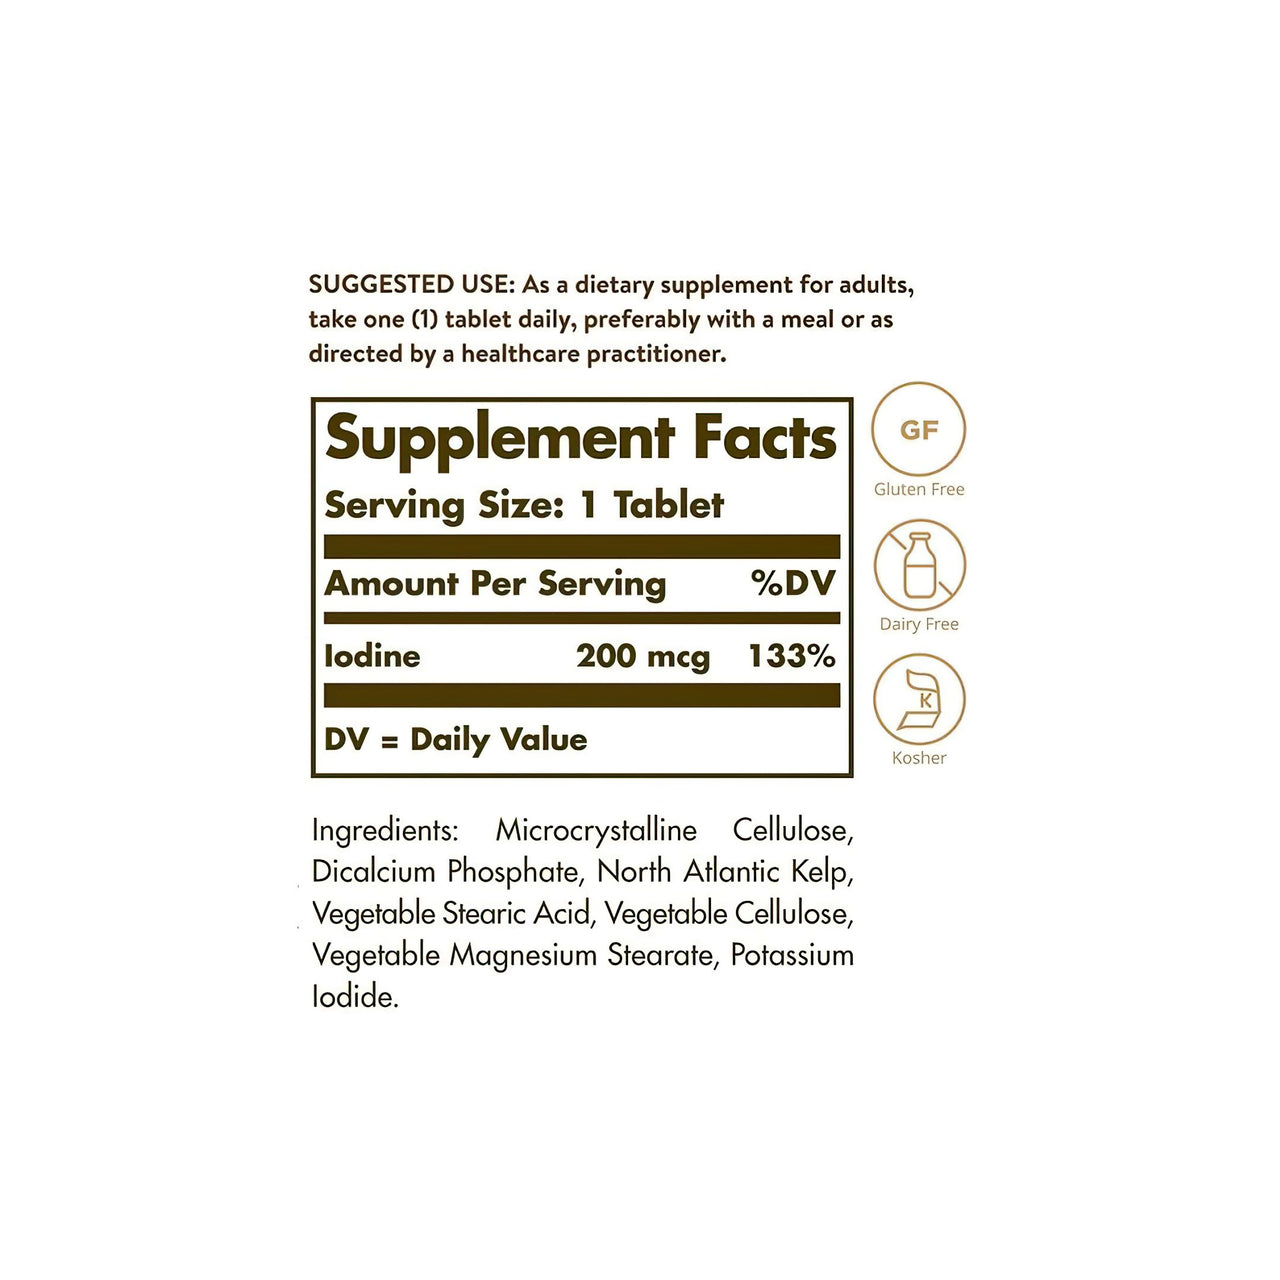 Ein Solgar Etikett mit den Inhaltsstoffen des Nahrungsergänzungsmittels Nordatlantischer Kelp 200 mcg 250 Tabletten, einschließlich Jod.